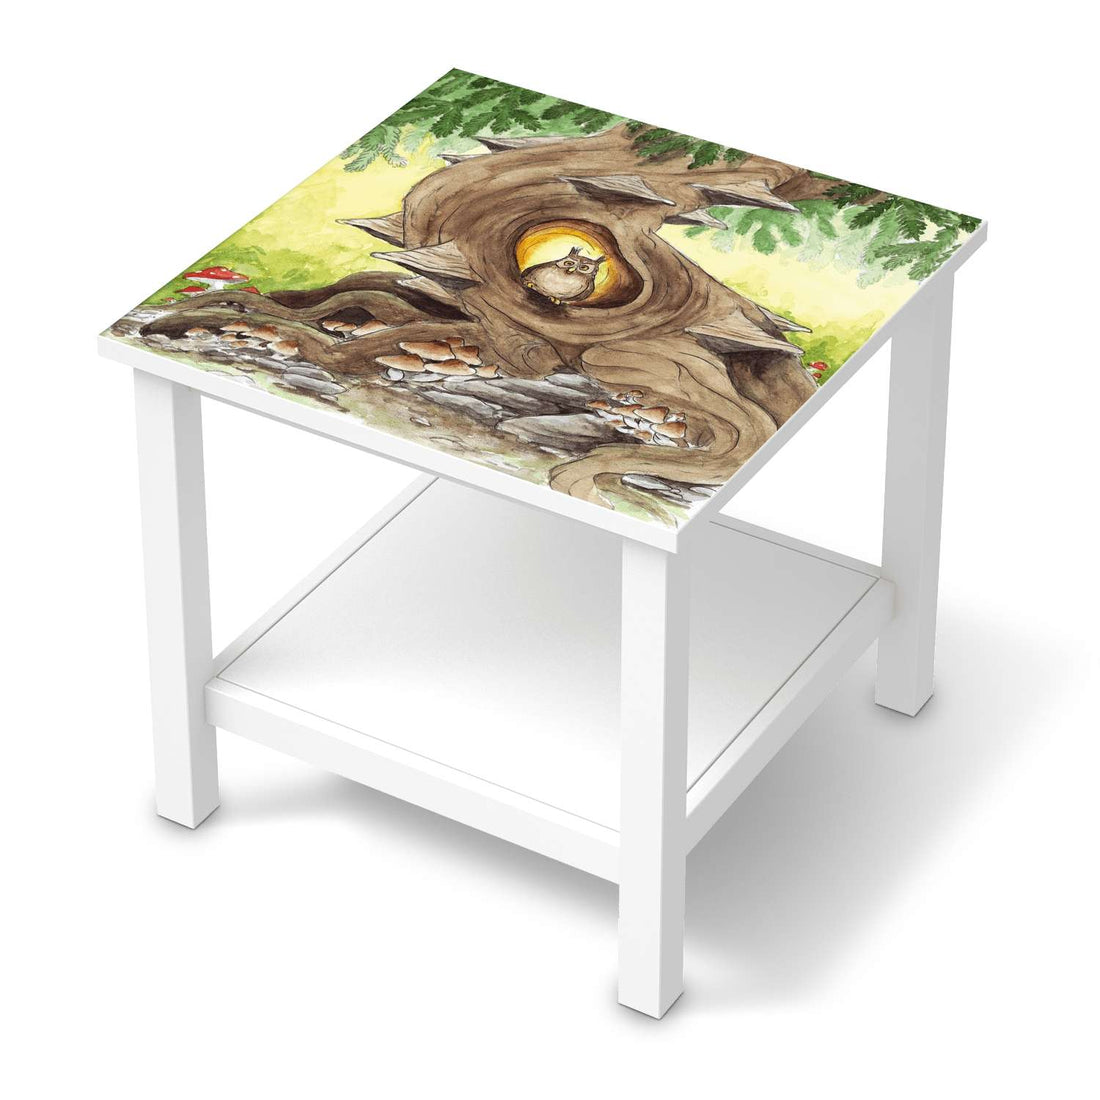 Möbel Klebefolie Eulenbaum - IKEA Hemnes Beistelltisch 55x55 cm  - weiss